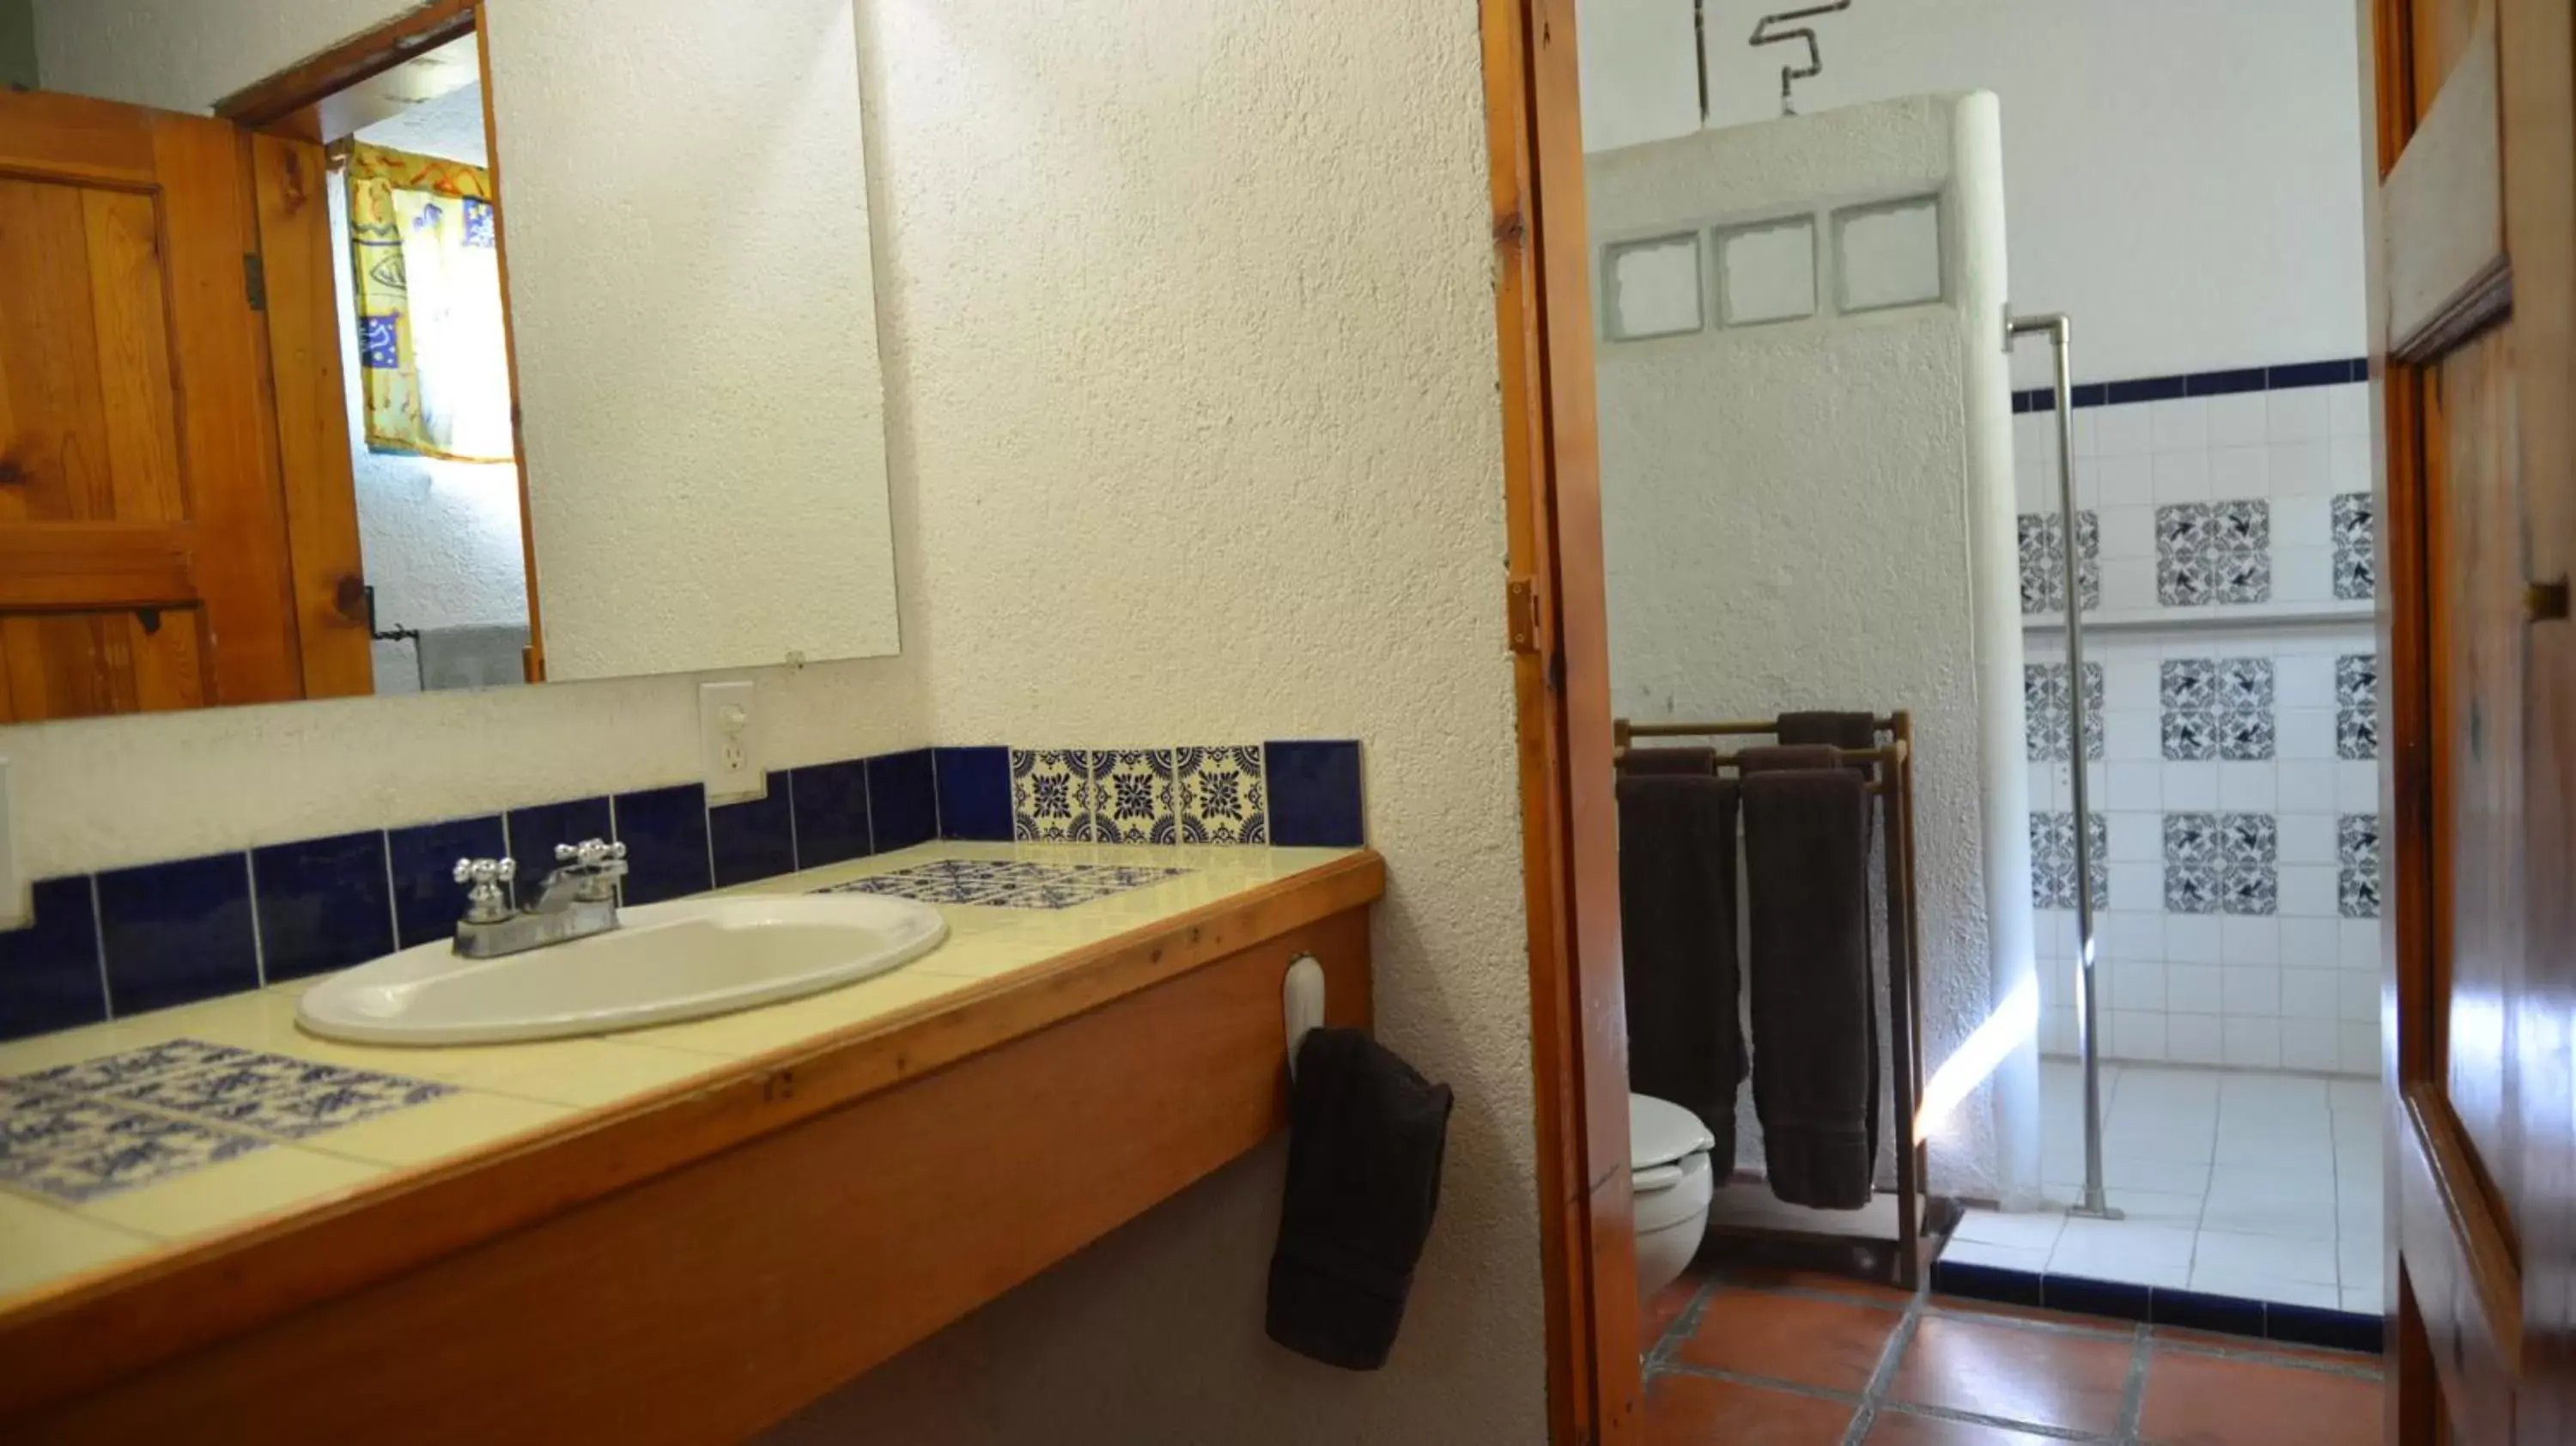 Bathroom in Casabuena B&B